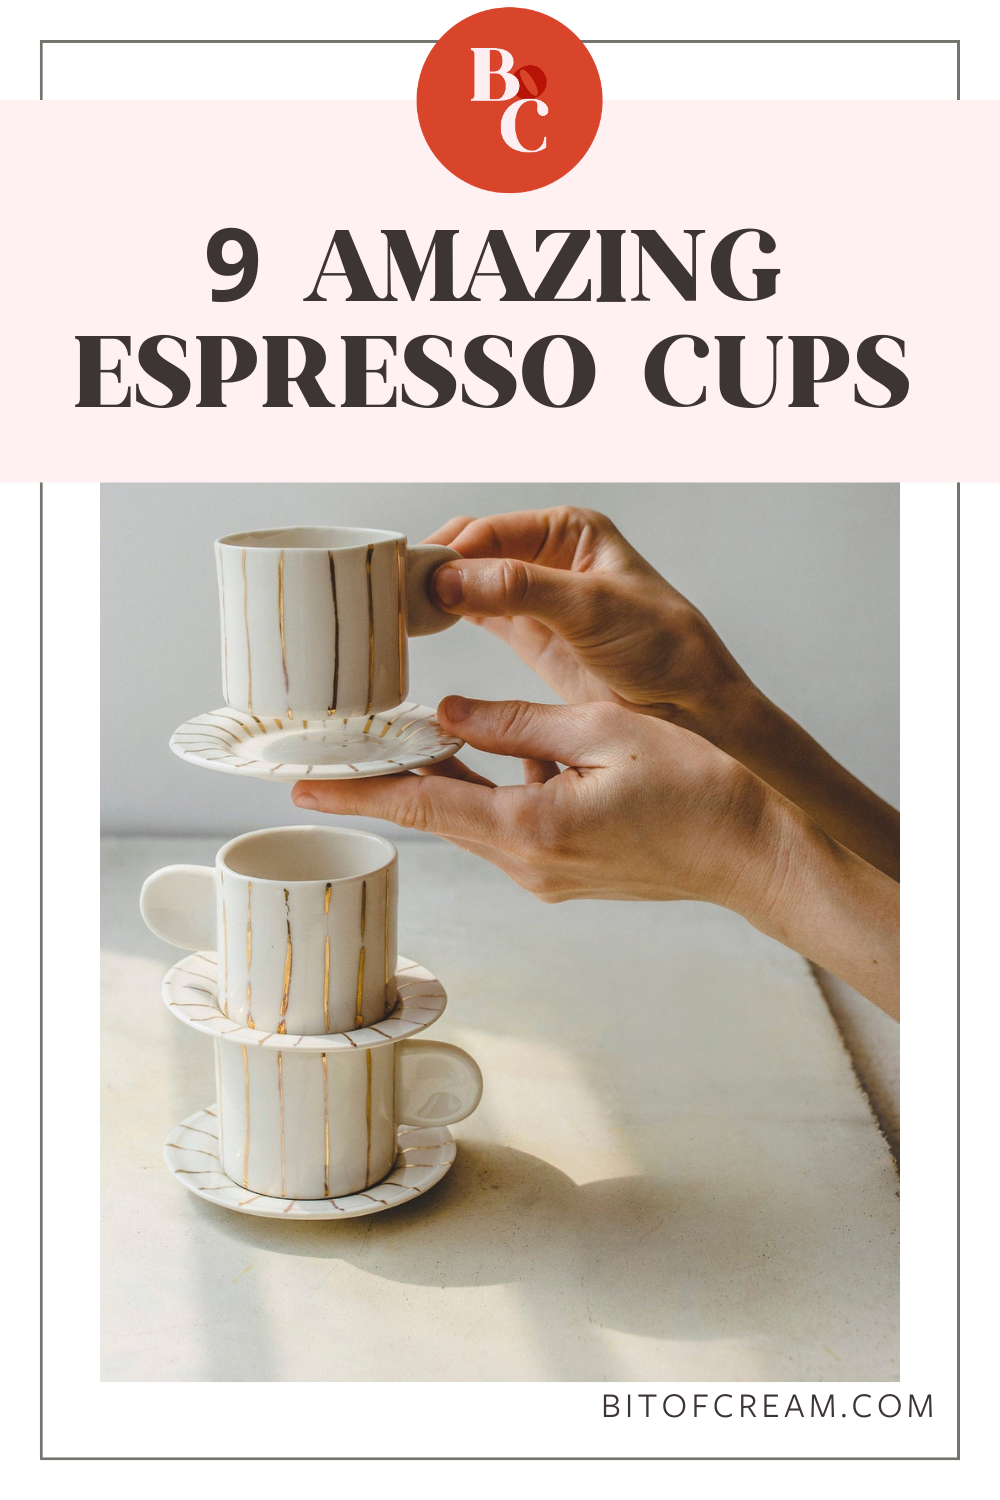 9 amazing espresso cups